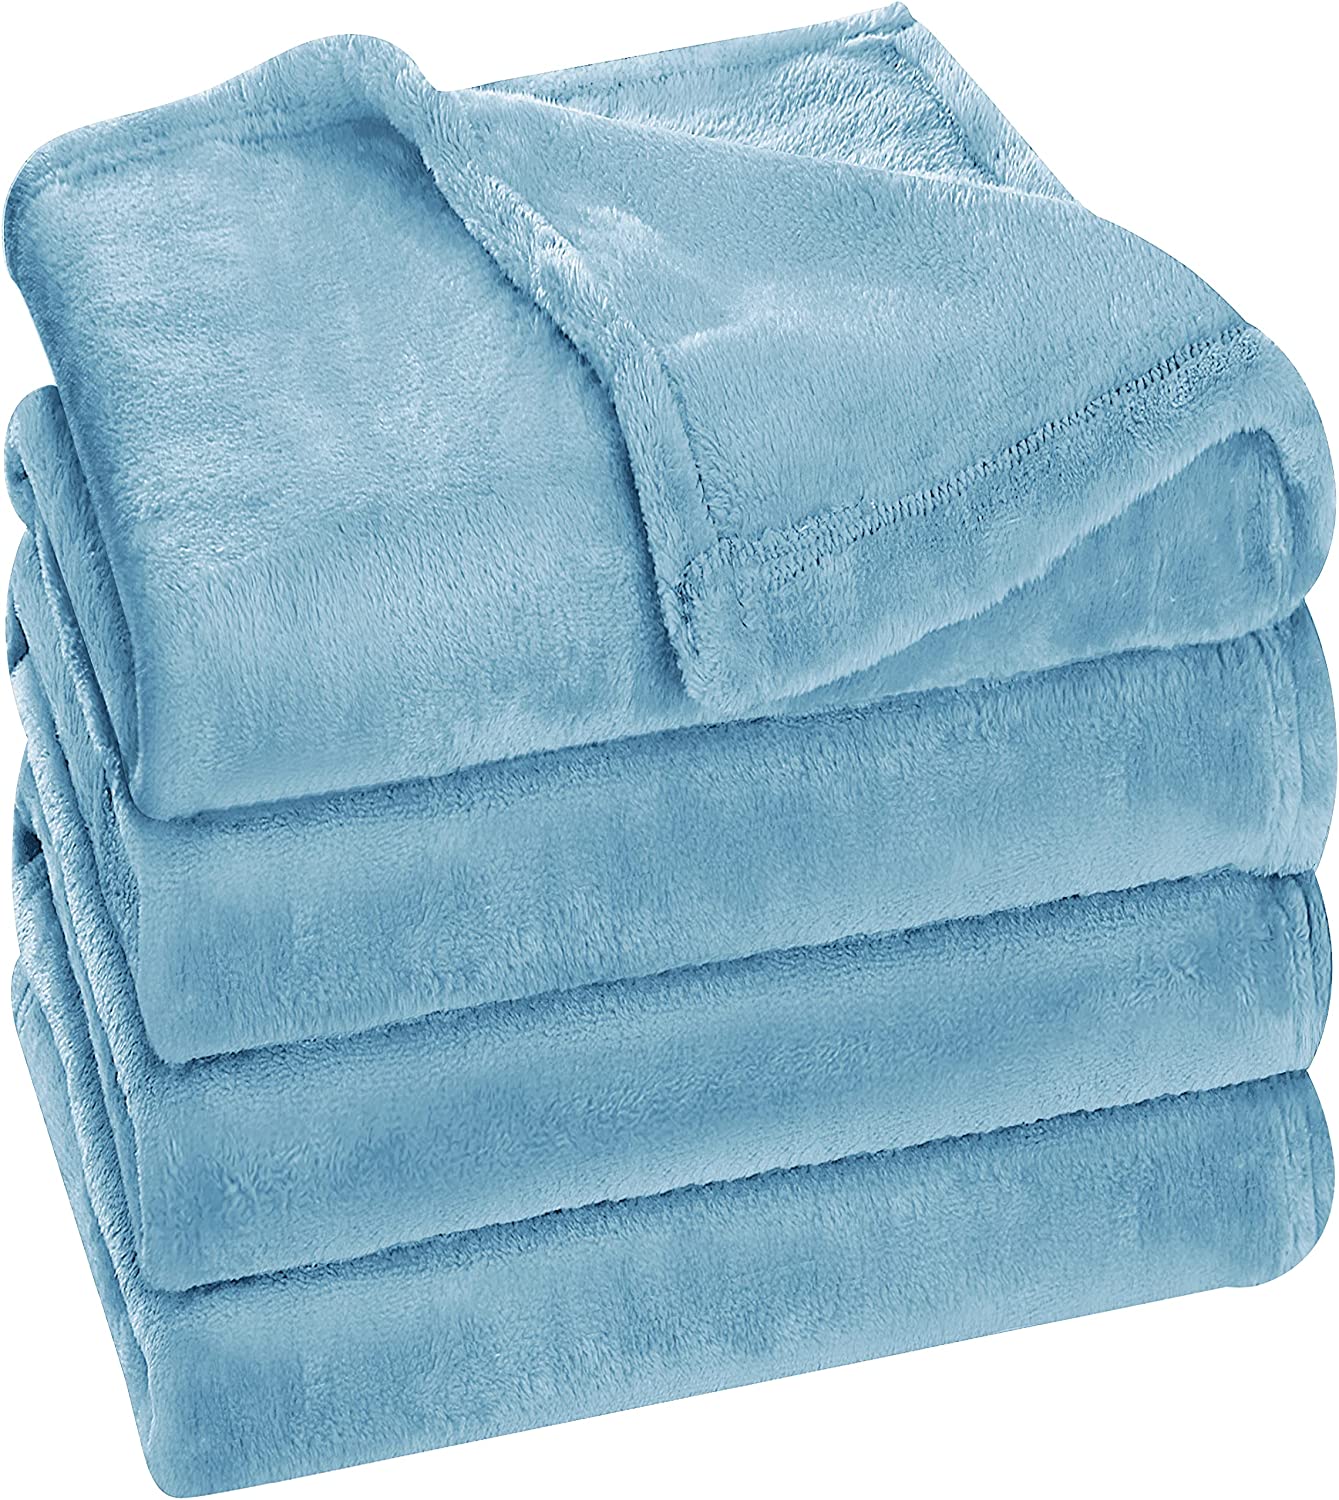 Fleece Blanket - Sky Blue - King 108"x90"